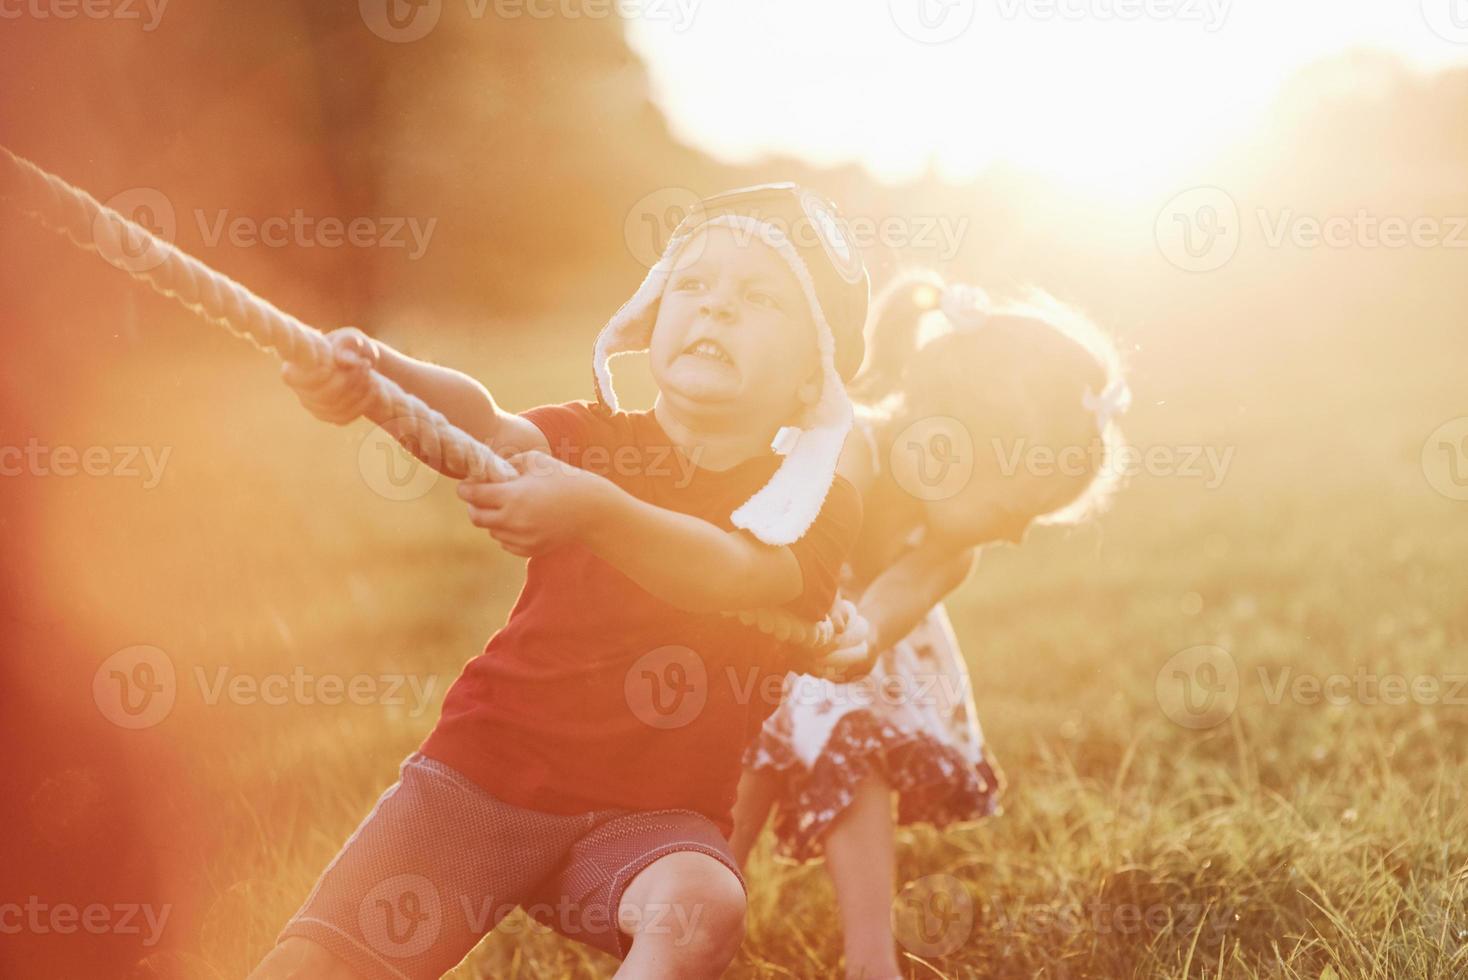 sento la forza nelle mie mani. questo è un tiro alla fune con papà sulla bellissima erba di una calda giornata di sole foto